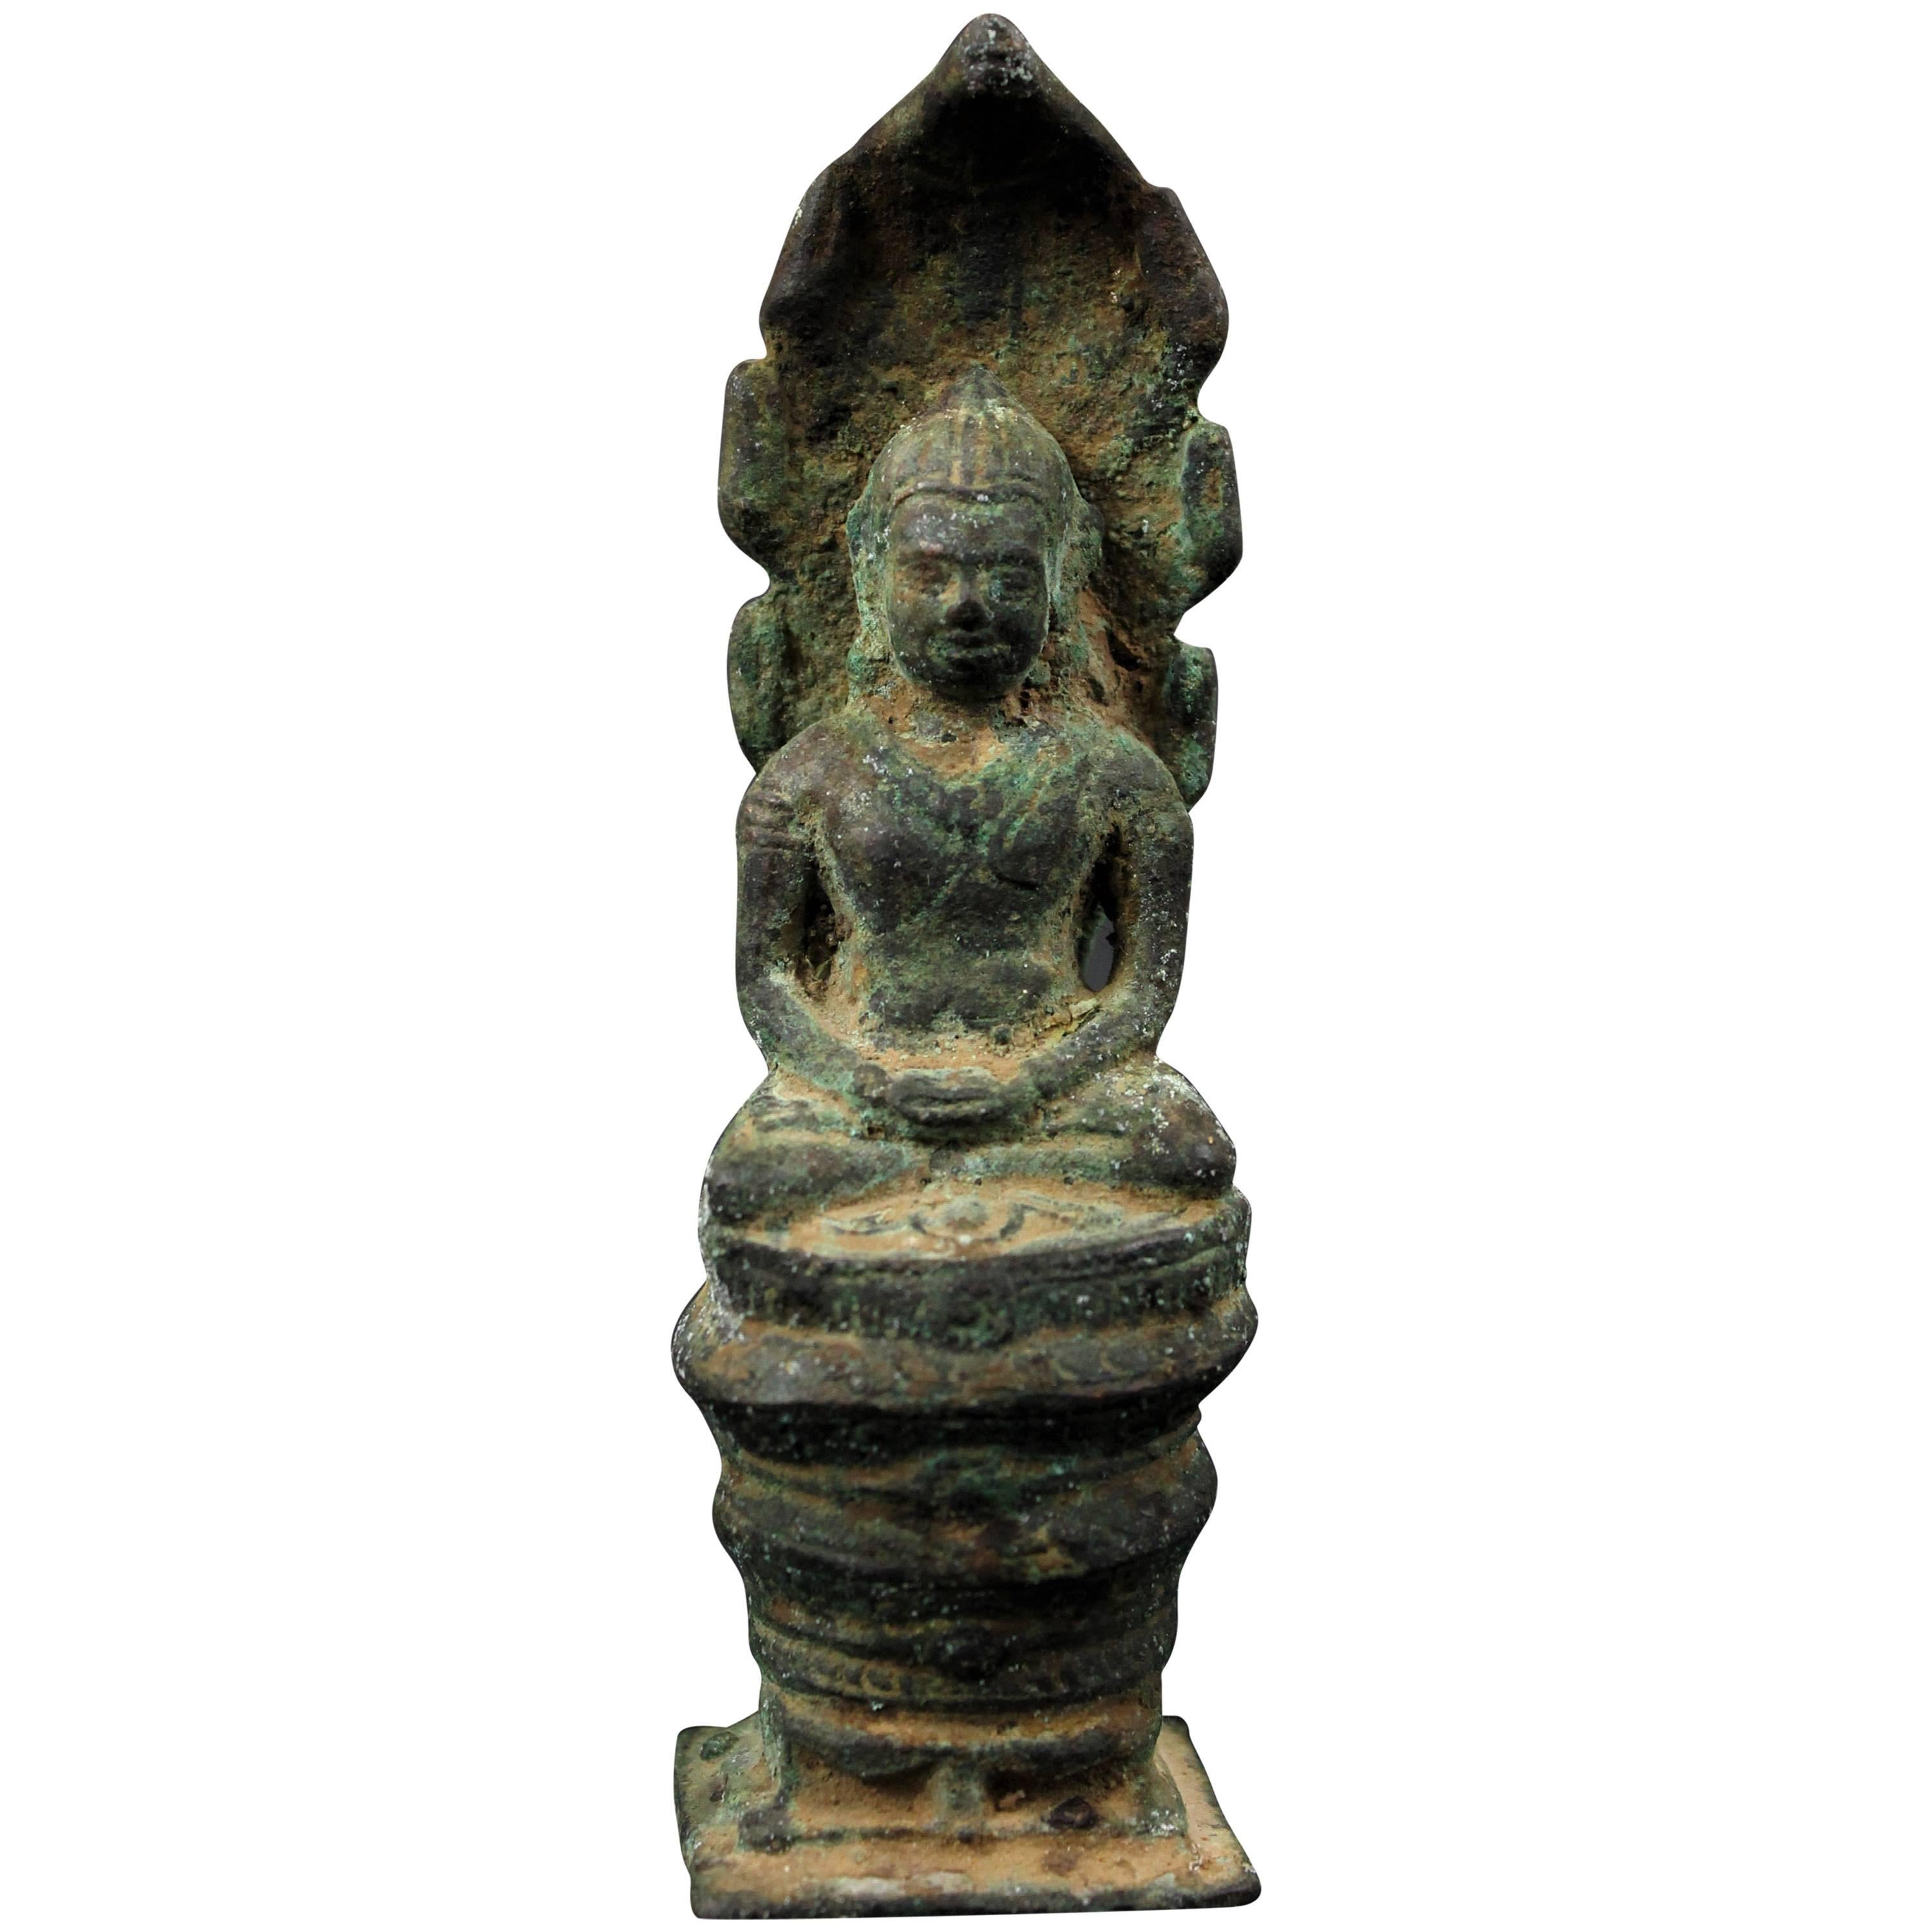 Art du Bouddha Naga en bronze, période Angkor, 12e siècle